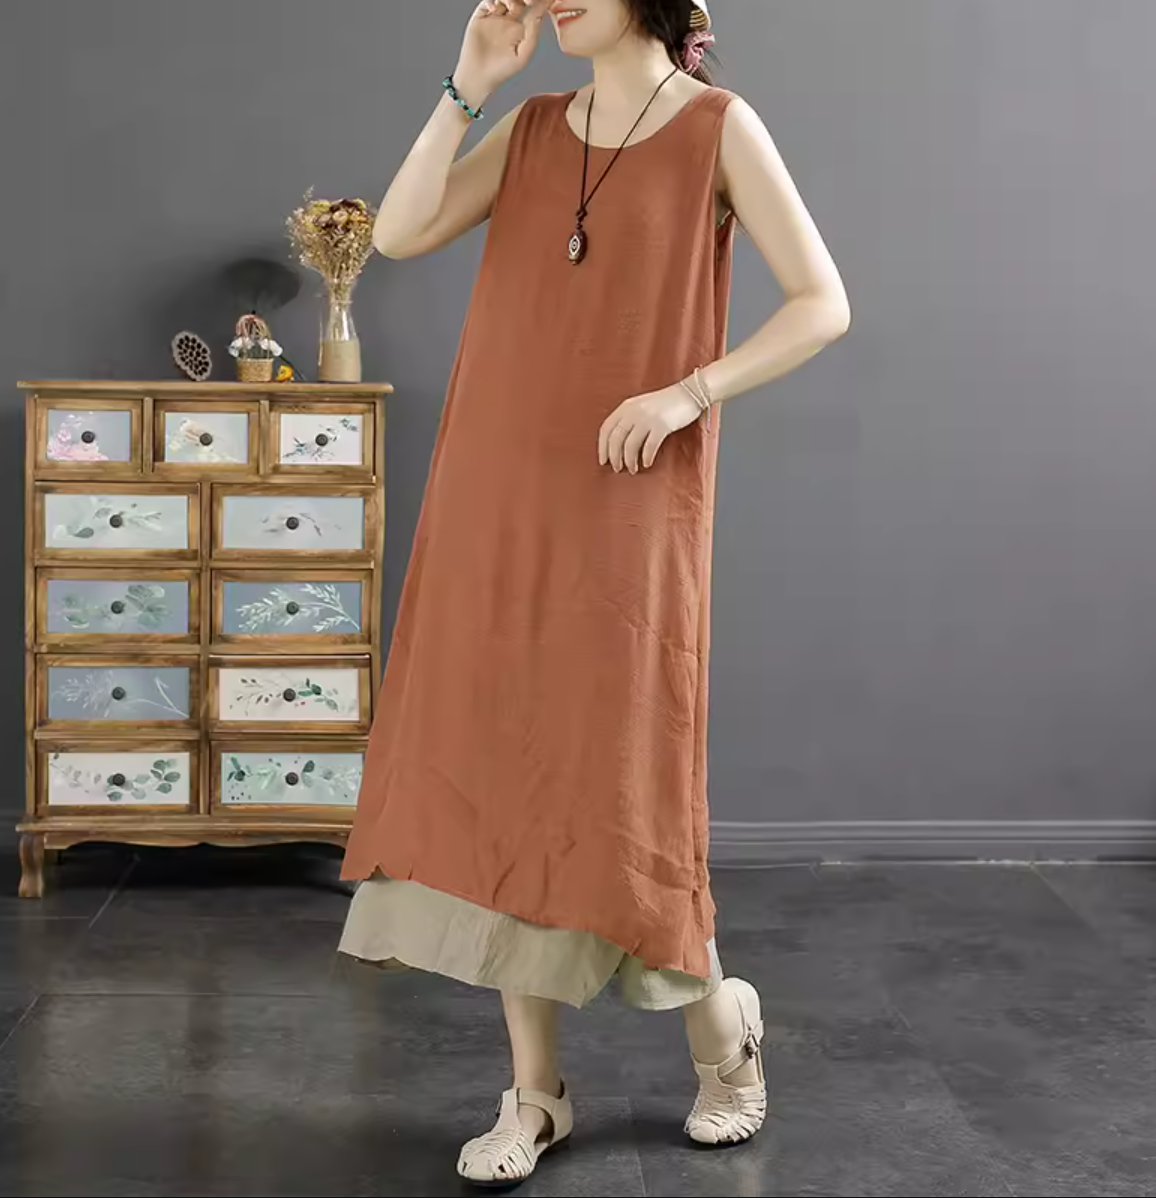 Women Retro Cotton Linen Summer Sleeveless Dress